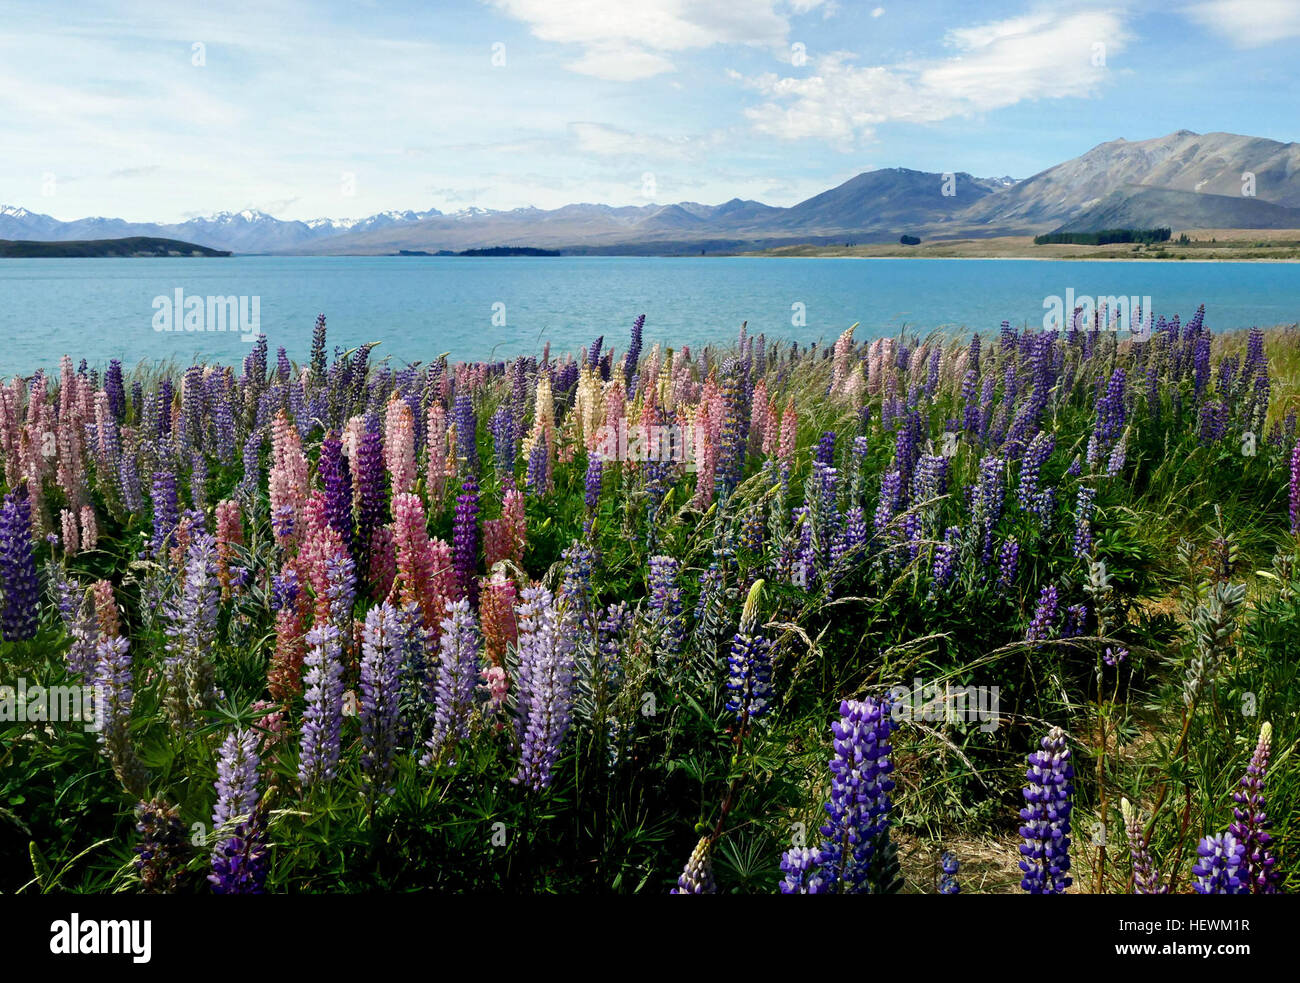 Für ca. 4-5 Wochen am Ende eines jeden Jahres, das Zentrum von Neuseelands Südinsel bricht in Farbe – Purpur und rosa und gelb Blues sprießen entlang See Seiten und in Flussbetten in Mackenzie Country, machen die bereits beeindruckende Ansichten noch unglaublicher. Stockfoto